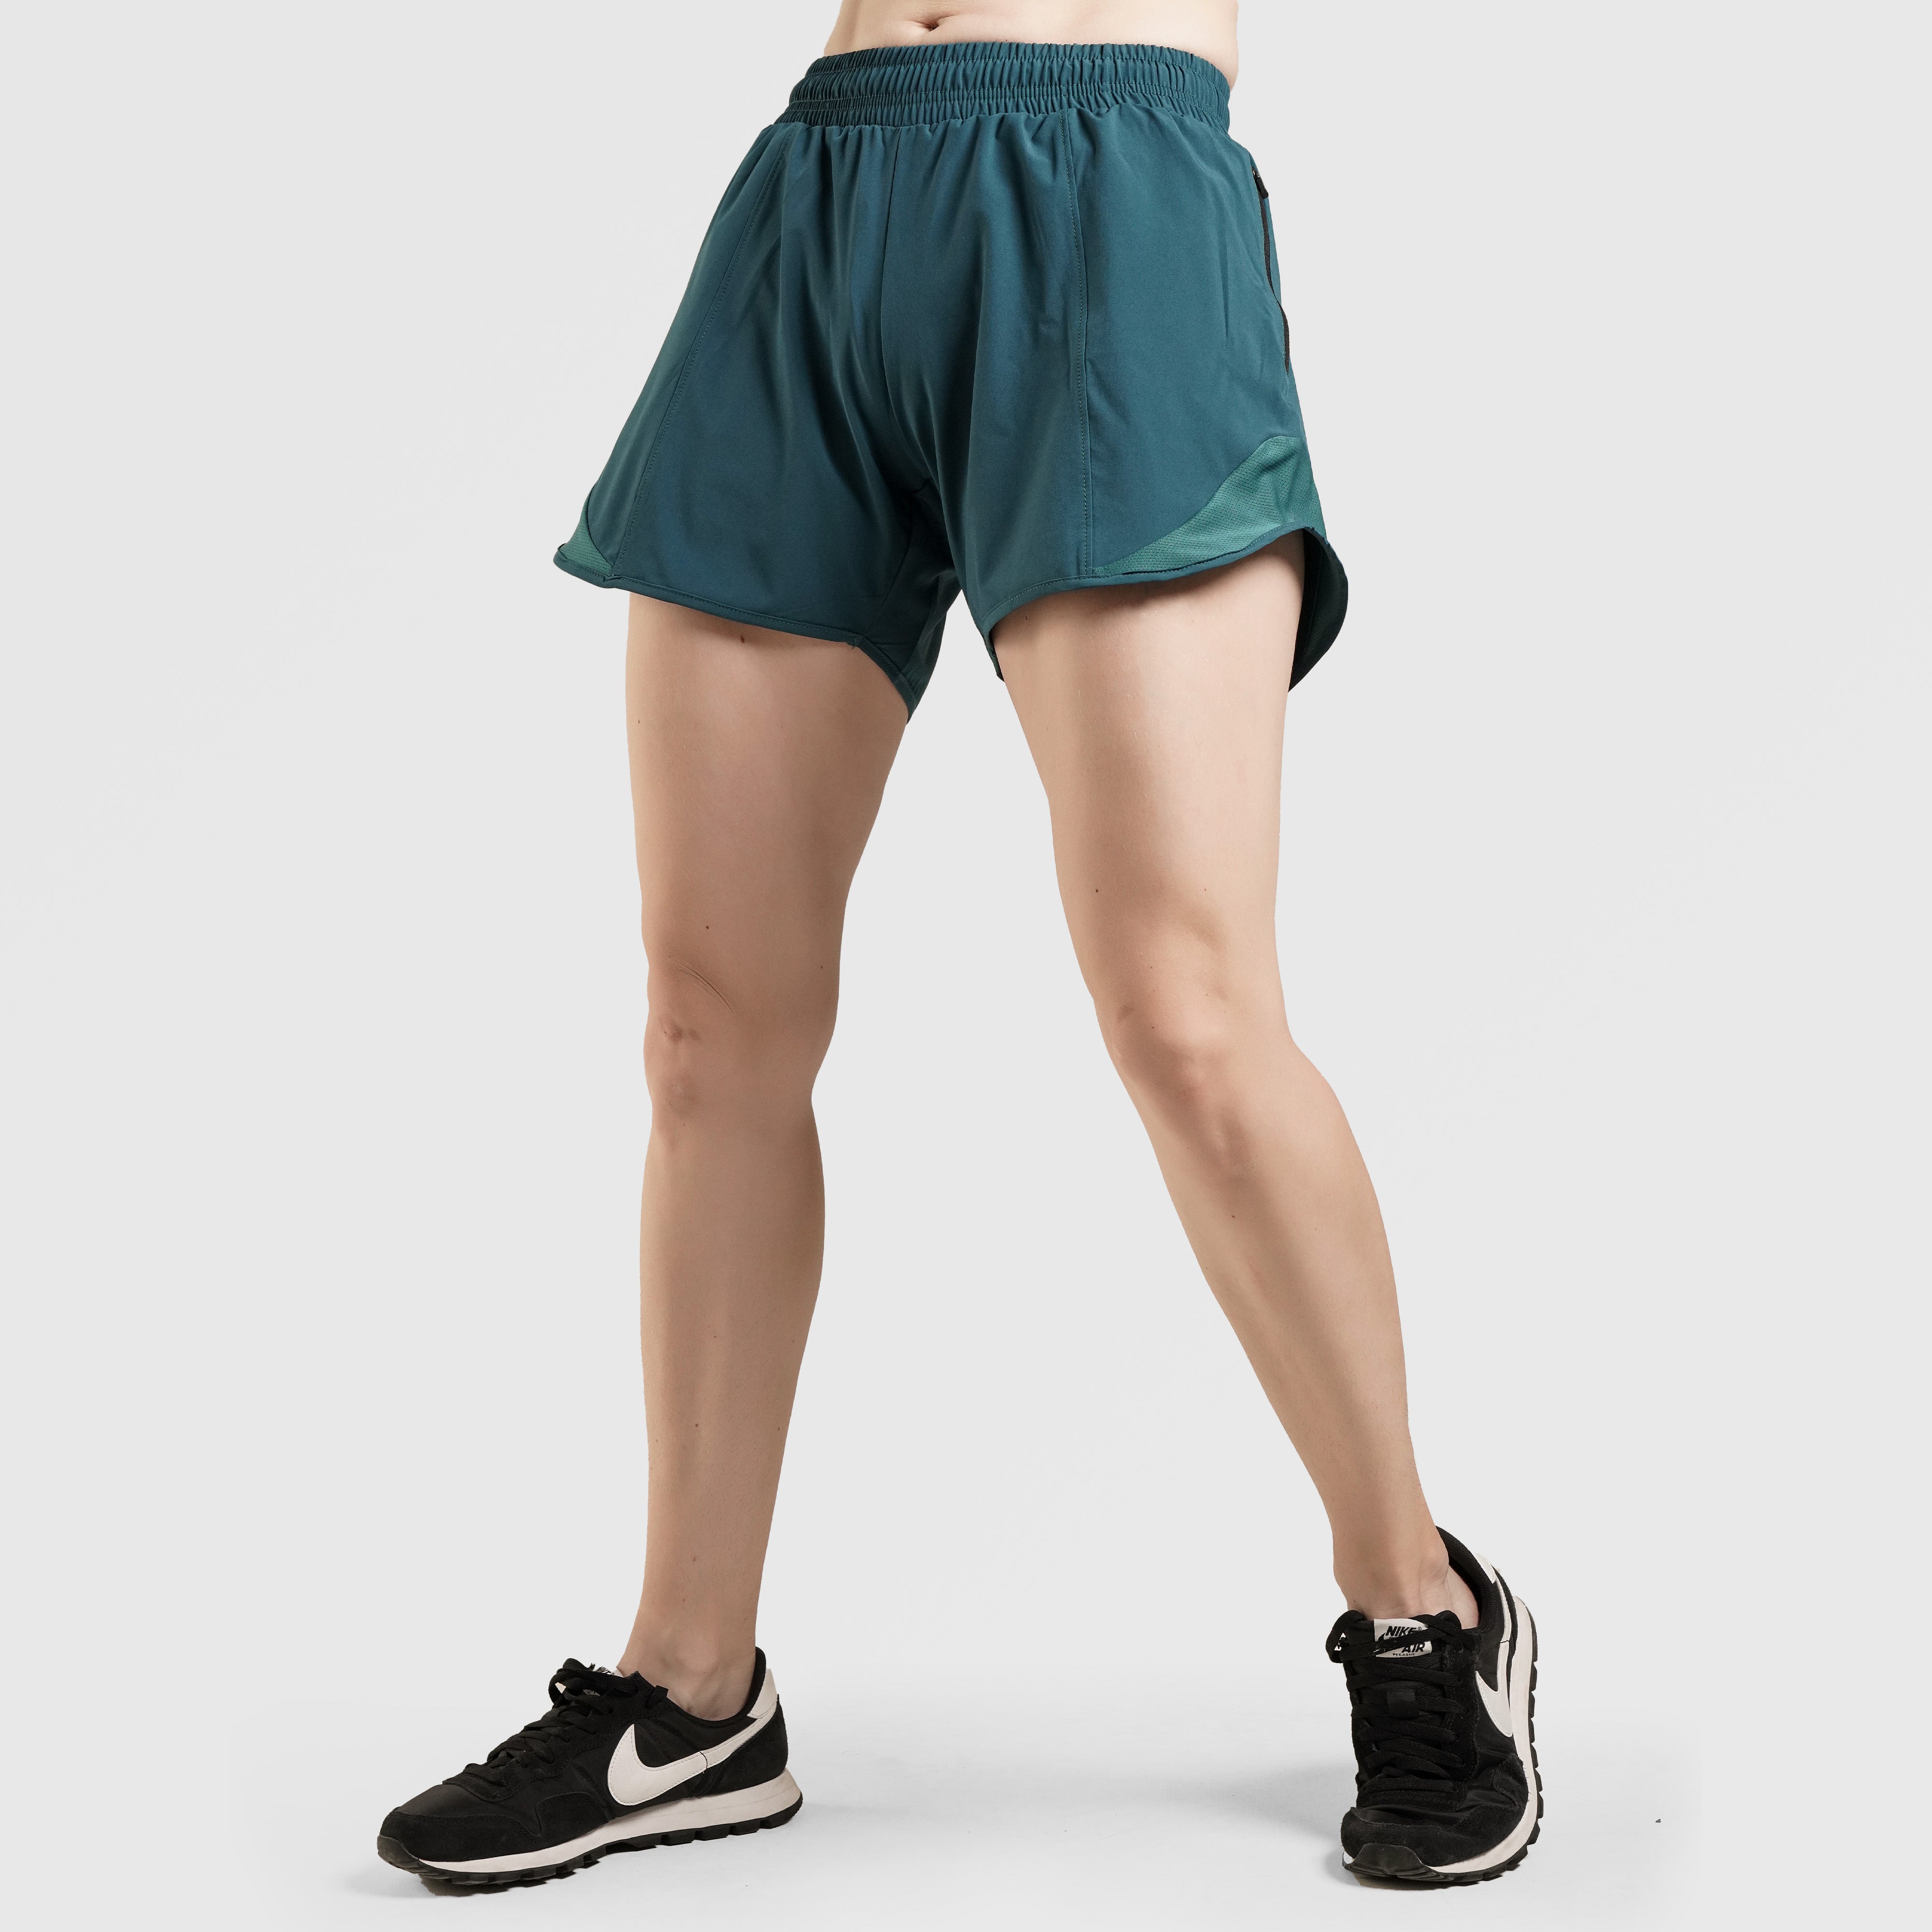 Yager Shorts (Green)